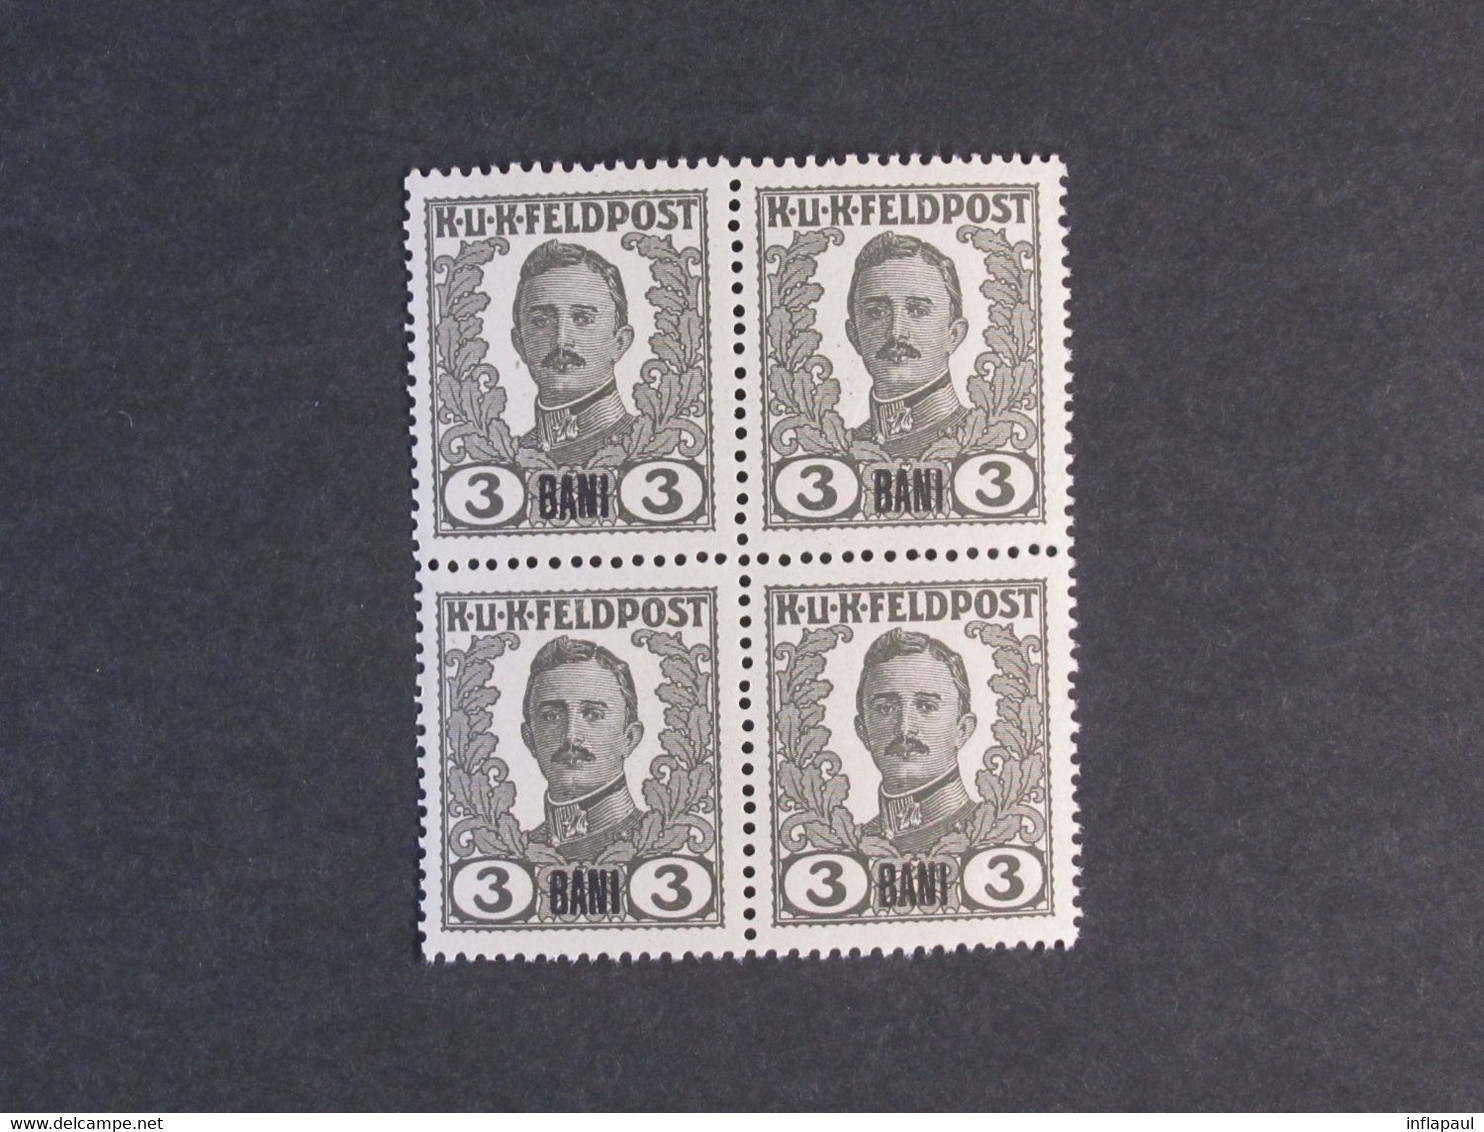 Unverausgabte Österreichisch - Ungarische  Feldpostmarken ** für Rumänien in  Viererblöcken,Teilserie 6800,00 €